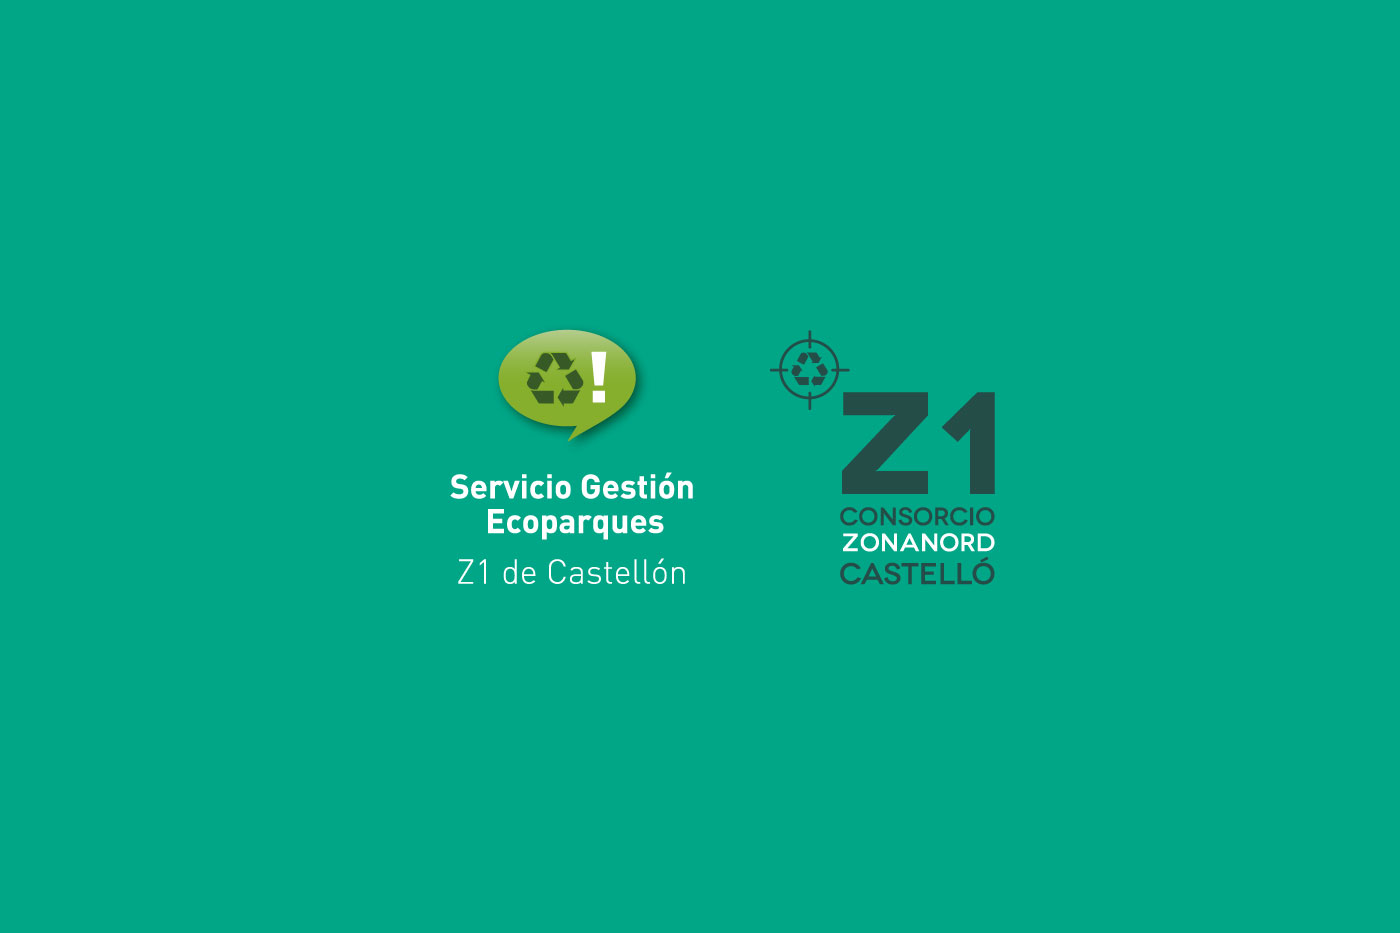 Servicio Gestión Ecoparques Z1 Castellón